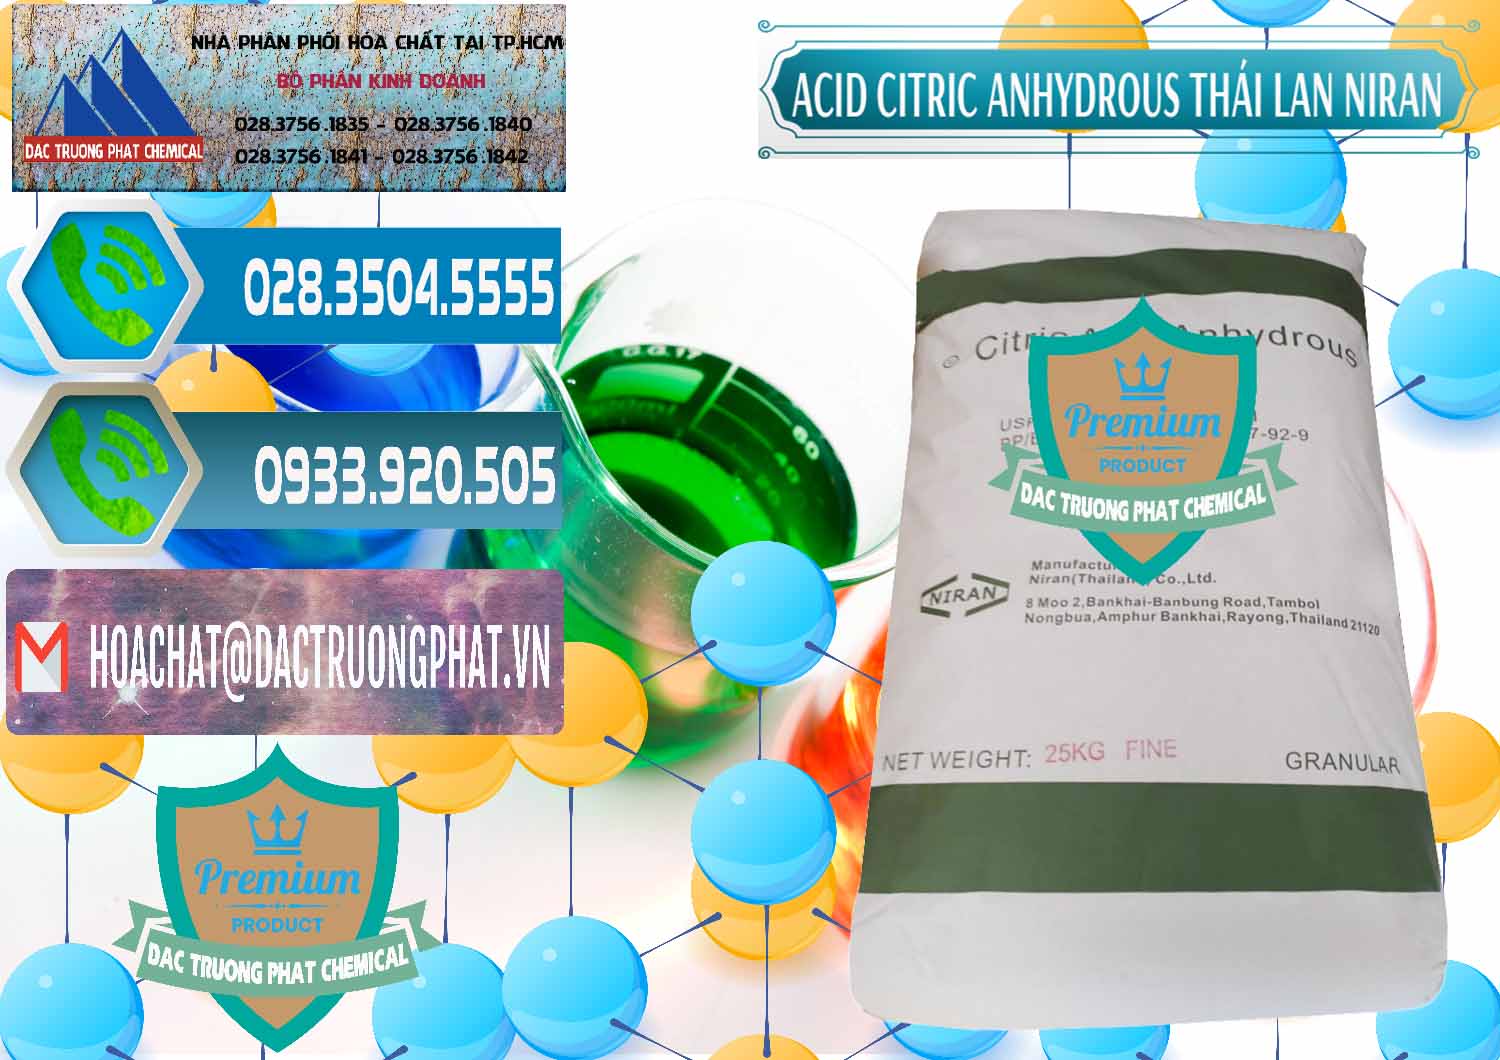 Cty bán và cung cấp Acid Citric - Axit Citric Anhydrous - Thái Lan Niran - 0231 - Công ty bán và cung cấp hóa chất tại TP.HCM - congtyhoachat.net